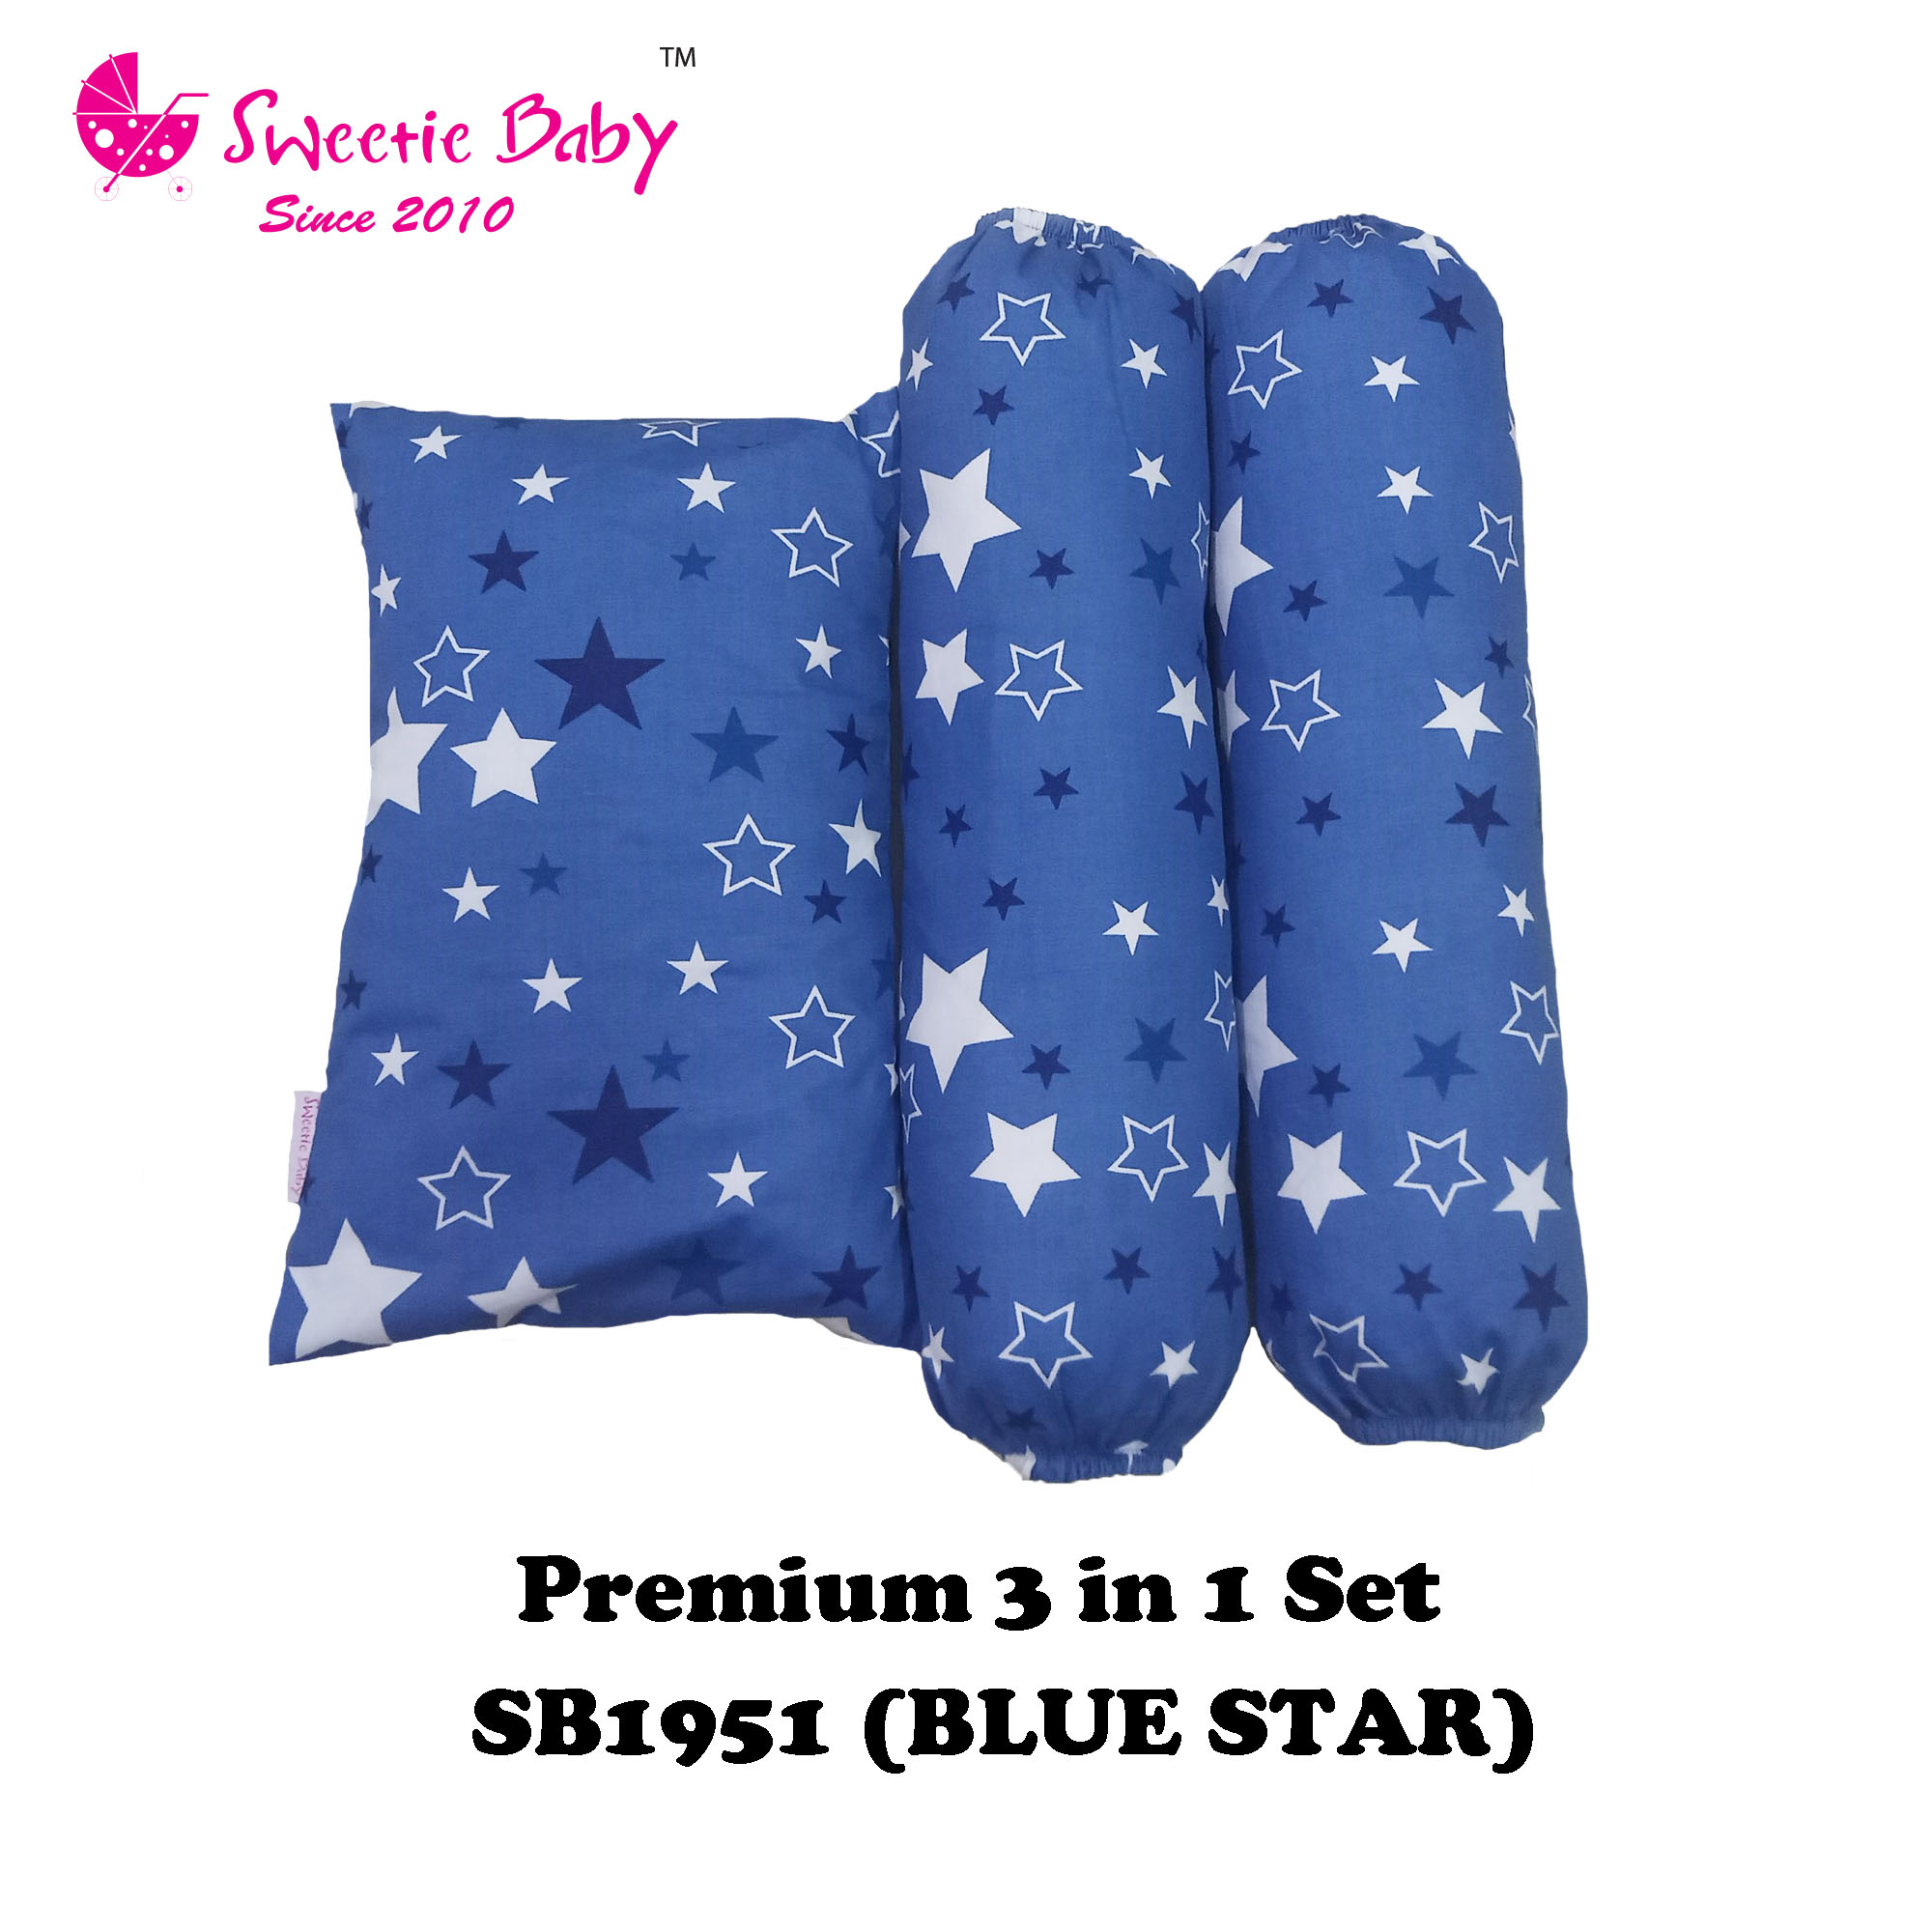 Sweetie Baby Premium 3in1 Pillow & Bolster Set (SB1951)